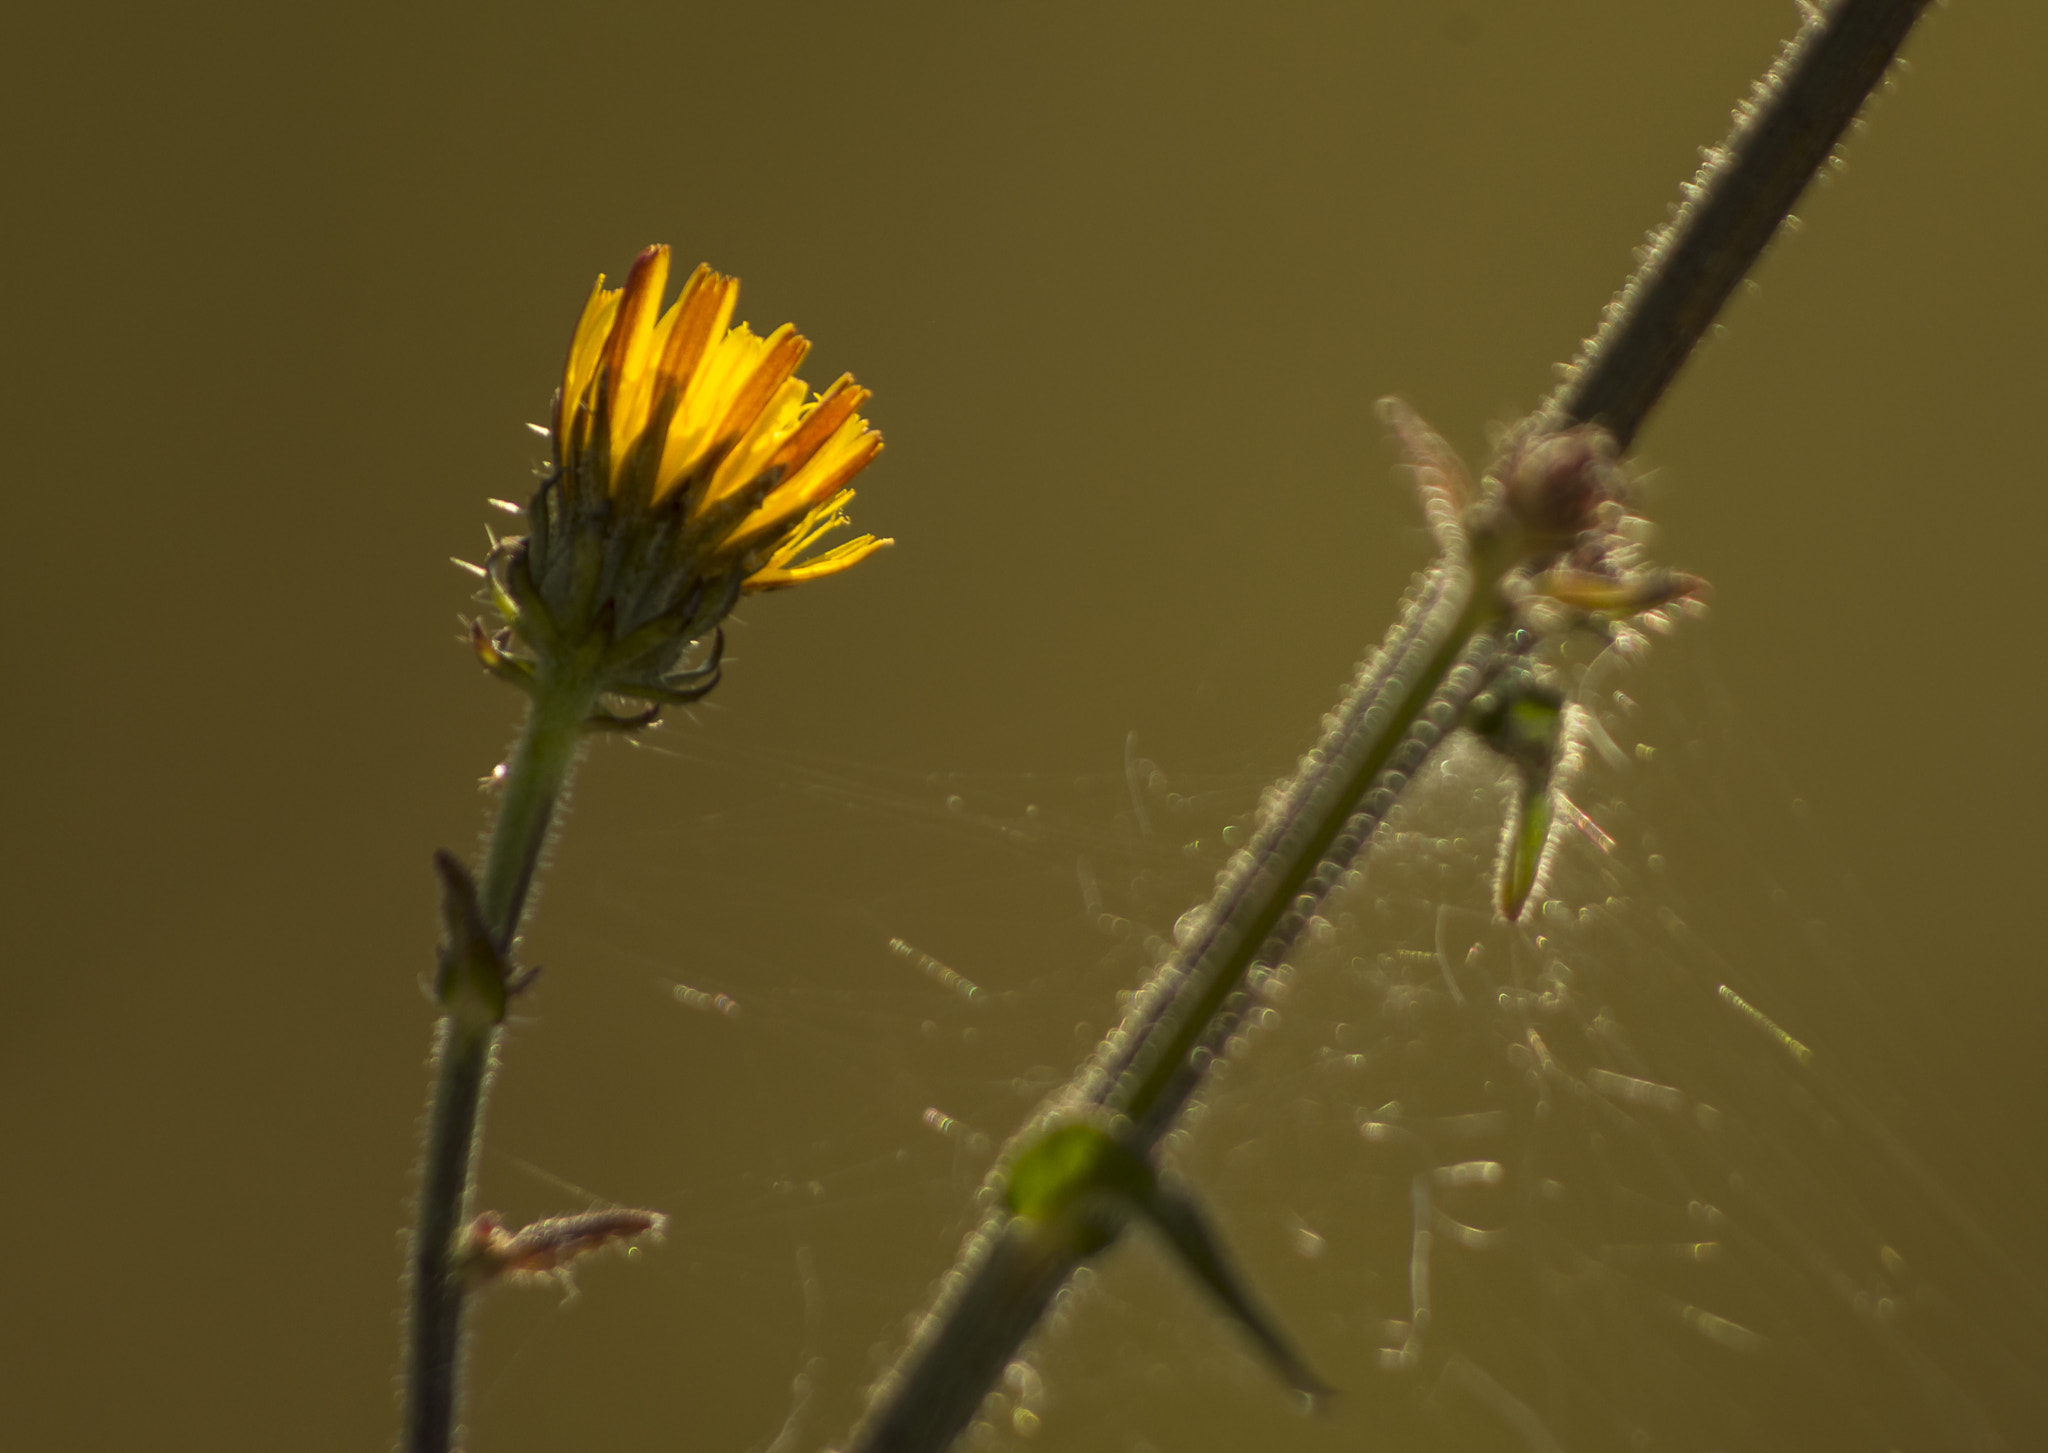 Pentax K-5 II sample photo. Reflet du soleil dans les fleurs sauvages photography